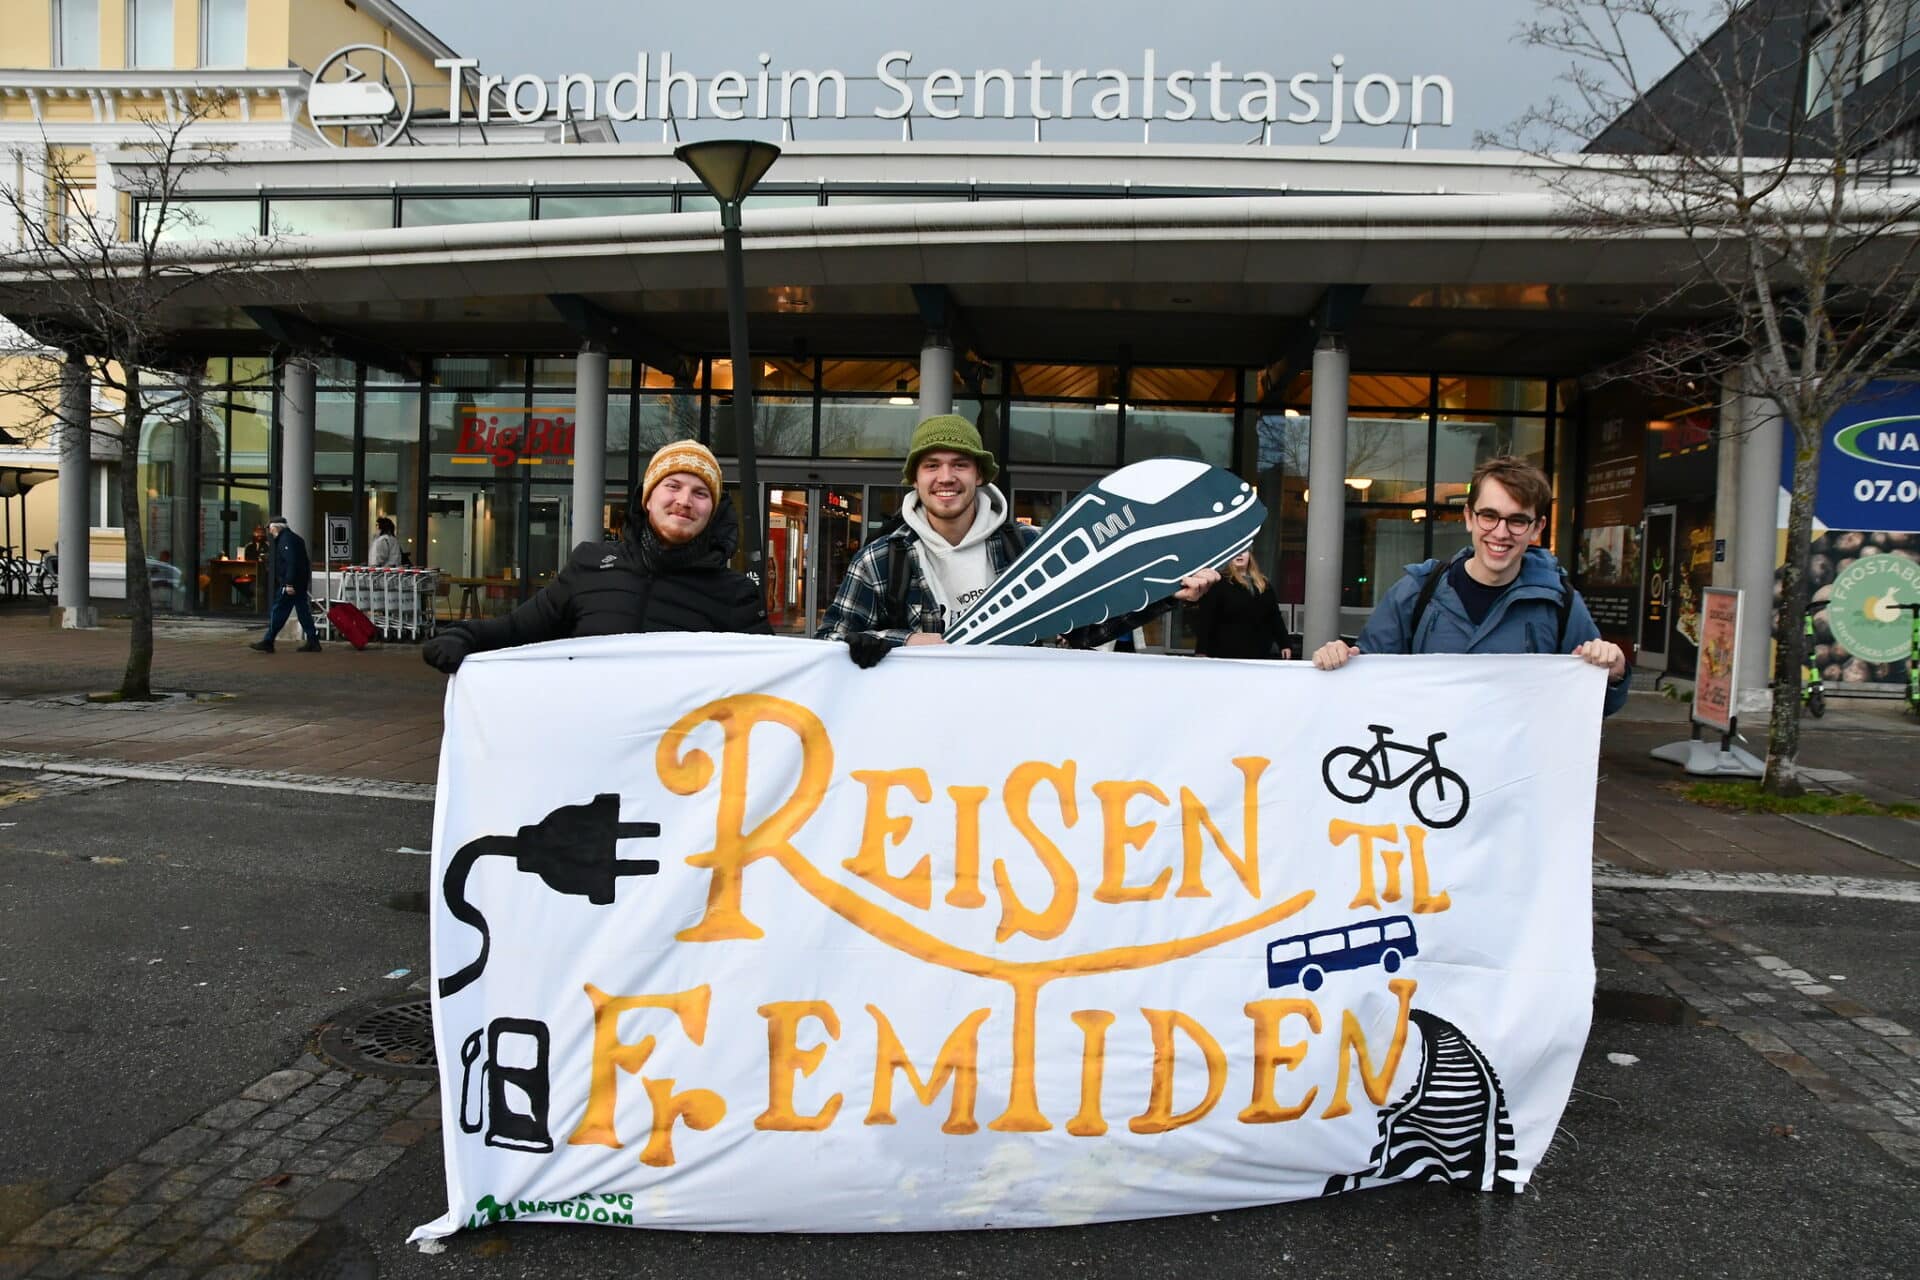 Tre ungdommer står foran Trondheim sentralstasjon med et banner hvor det står "Reisen til fremtiden" med gul skrift. På banneret er det malt en sykkel, et støpsel og et sett togskinner.